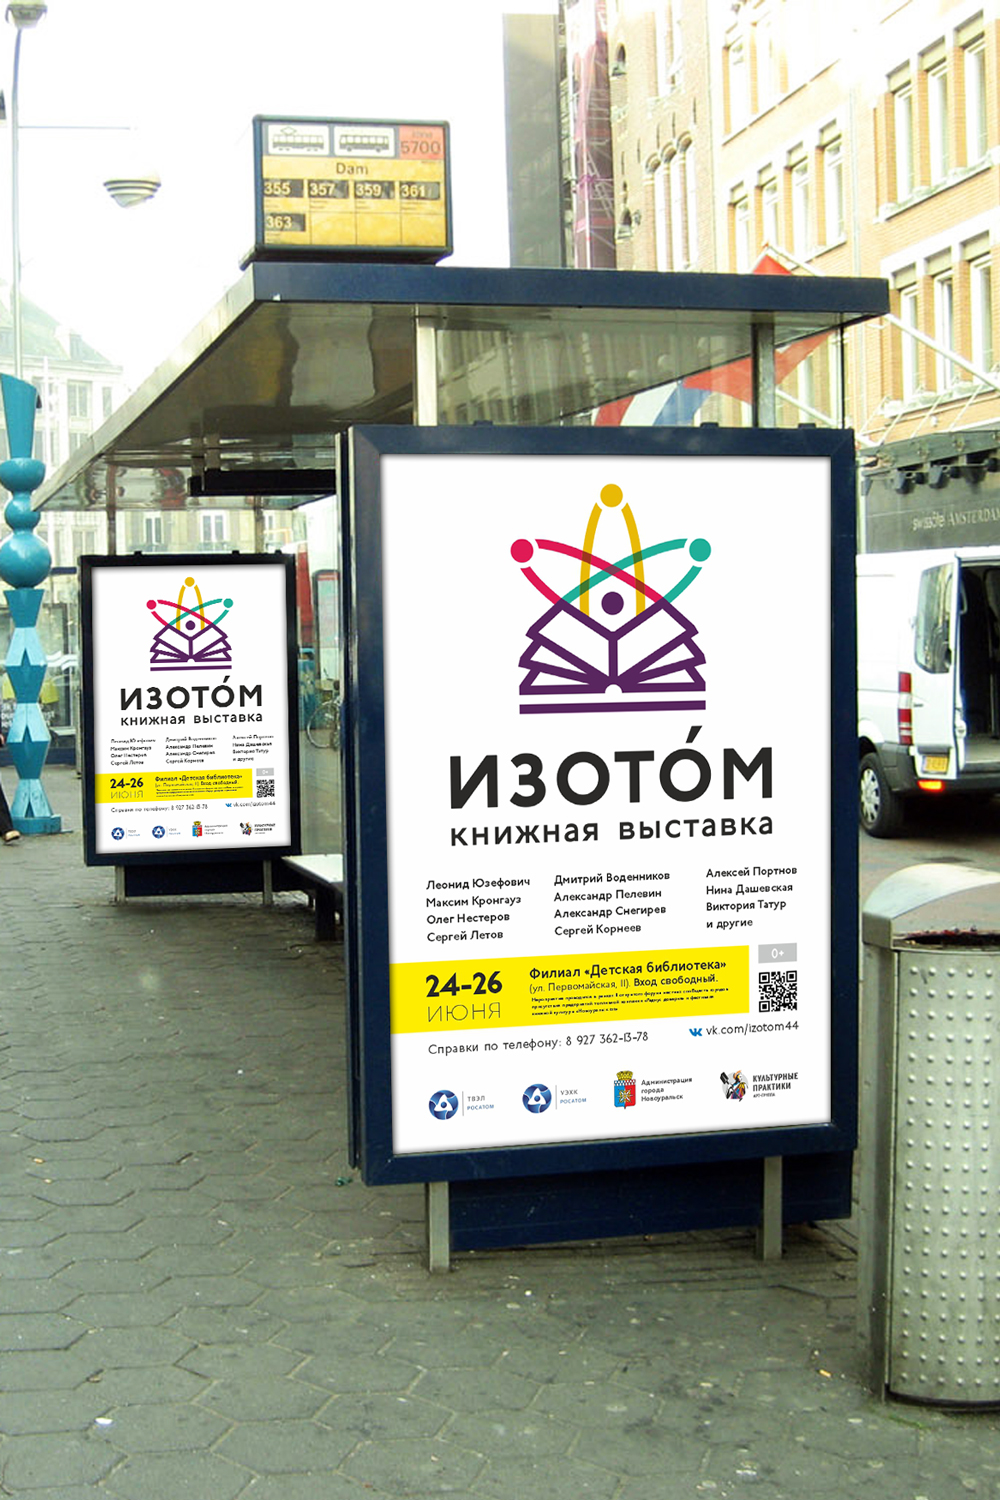 Логотип фестиваля Изотом. Ситиформат